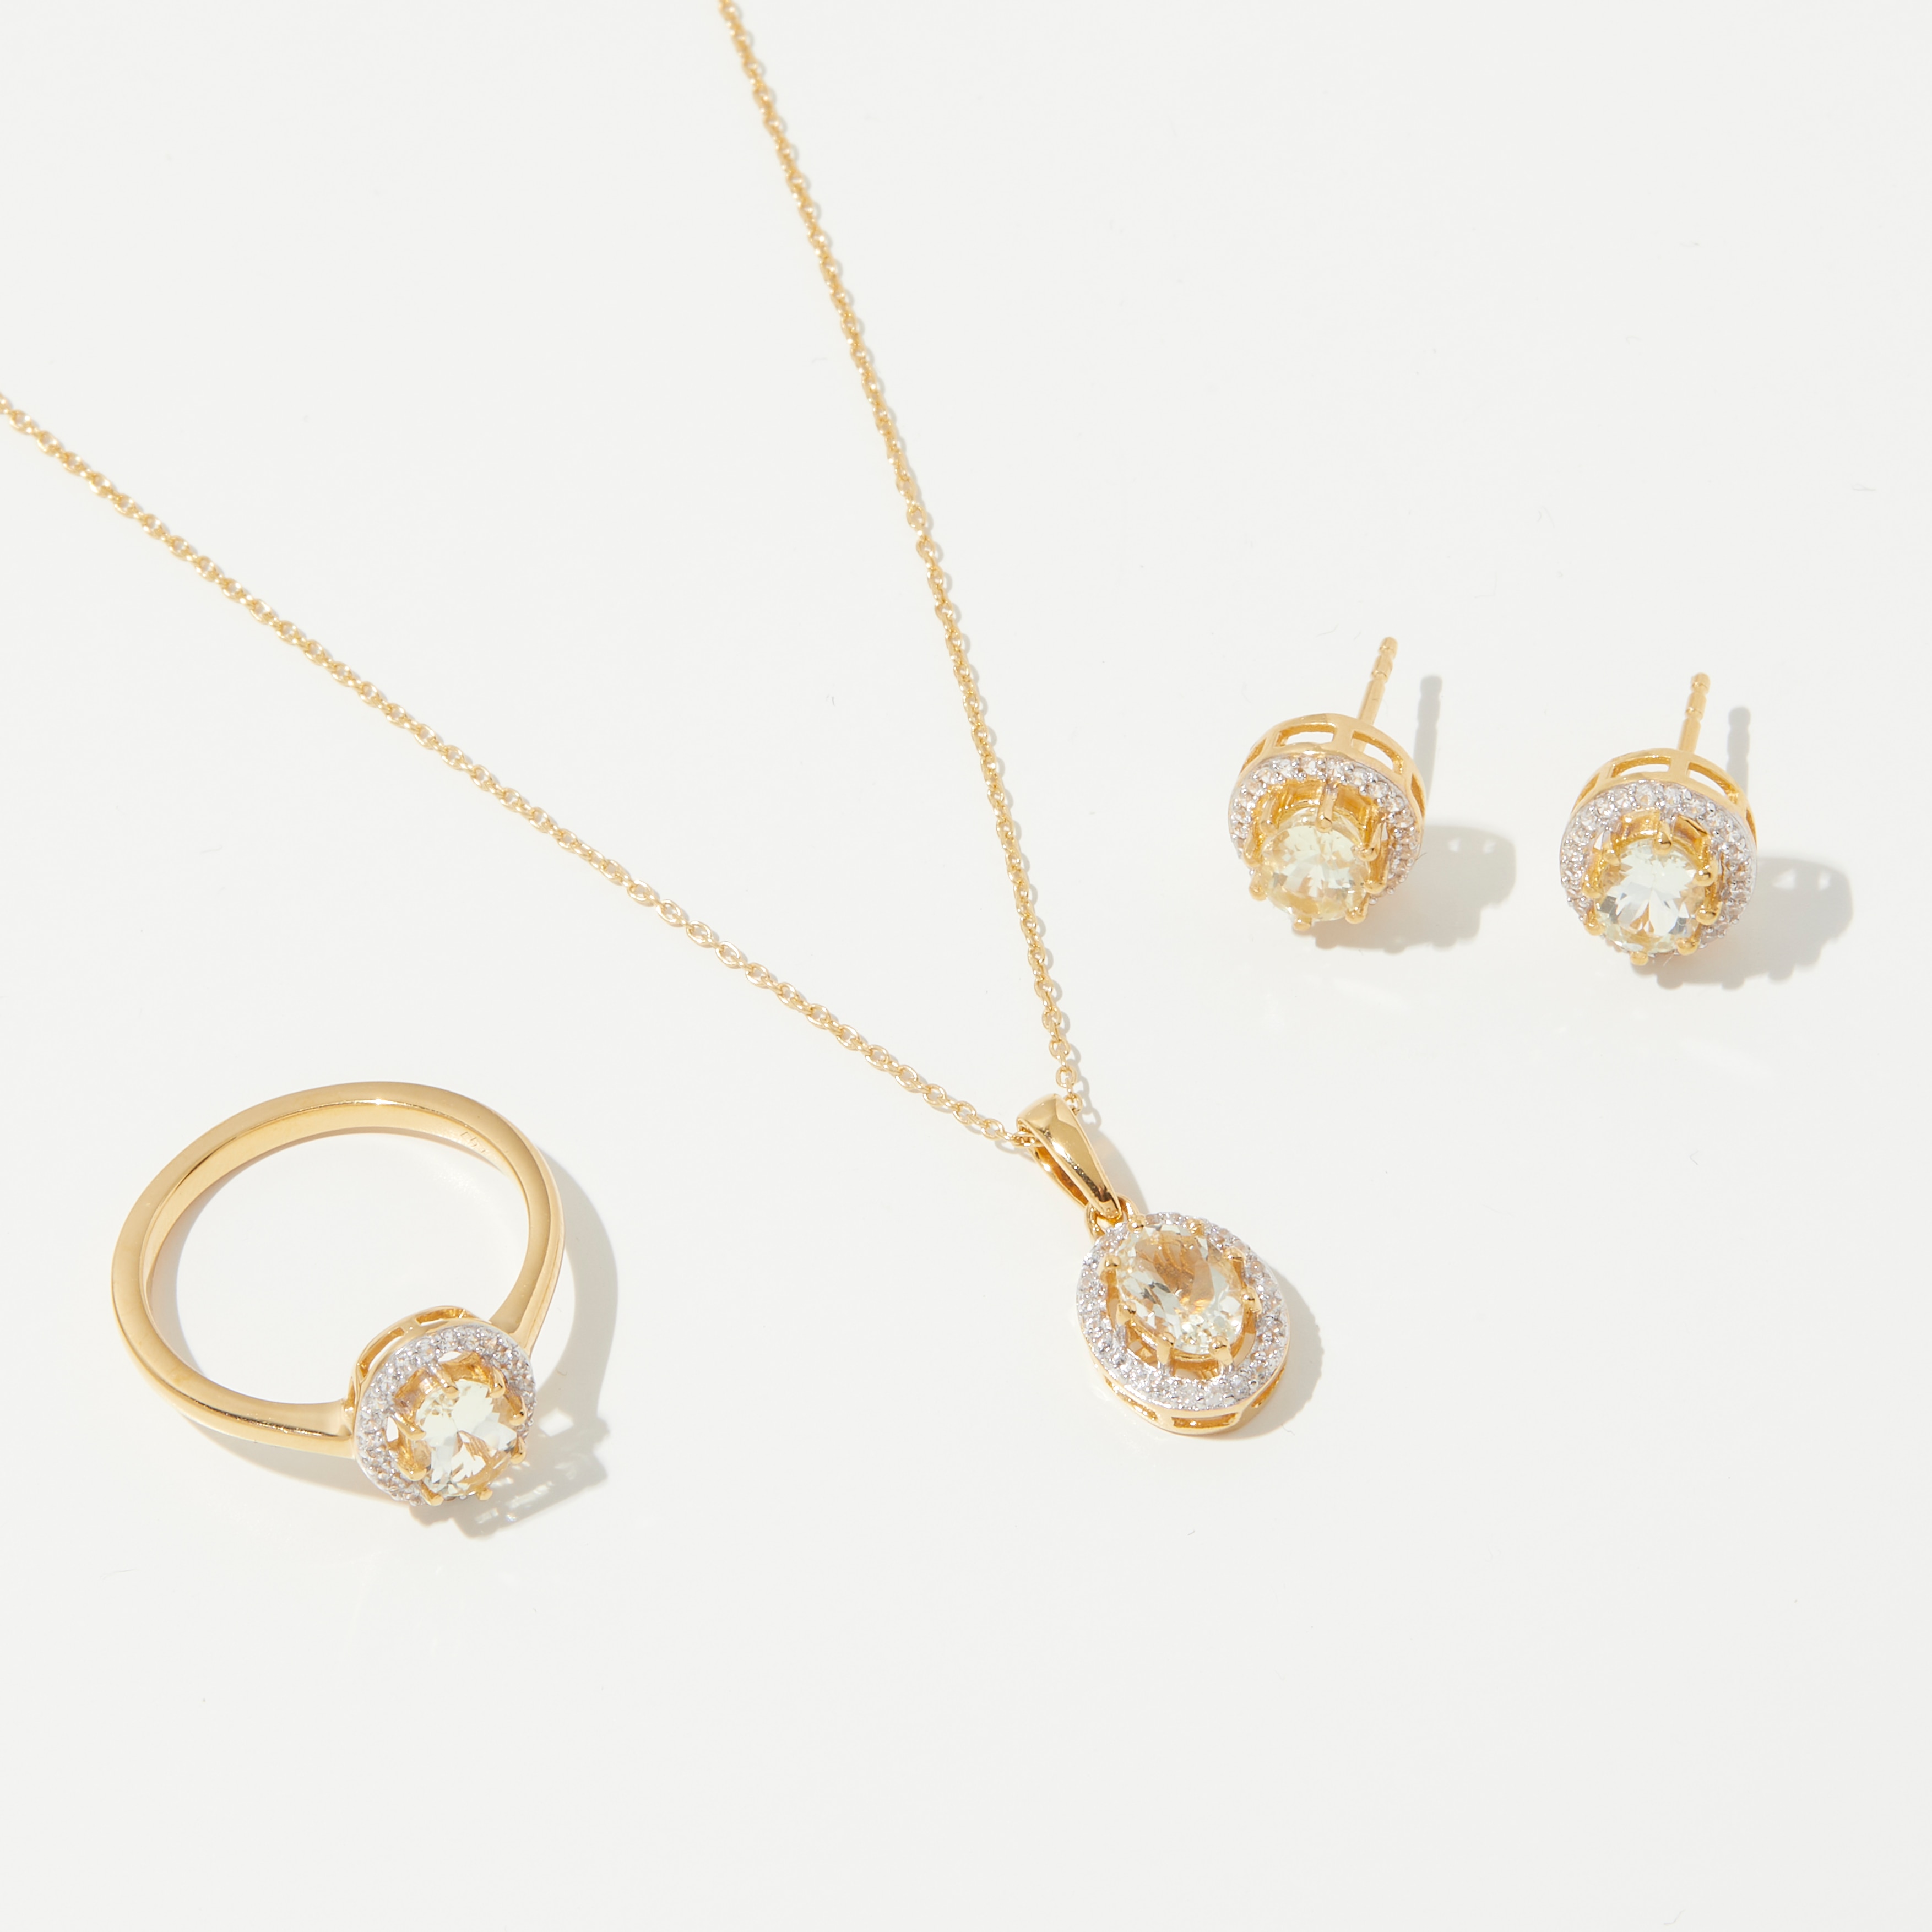 Jewellery - Necklaces & Pendants - Pendant Necklaces - Gem